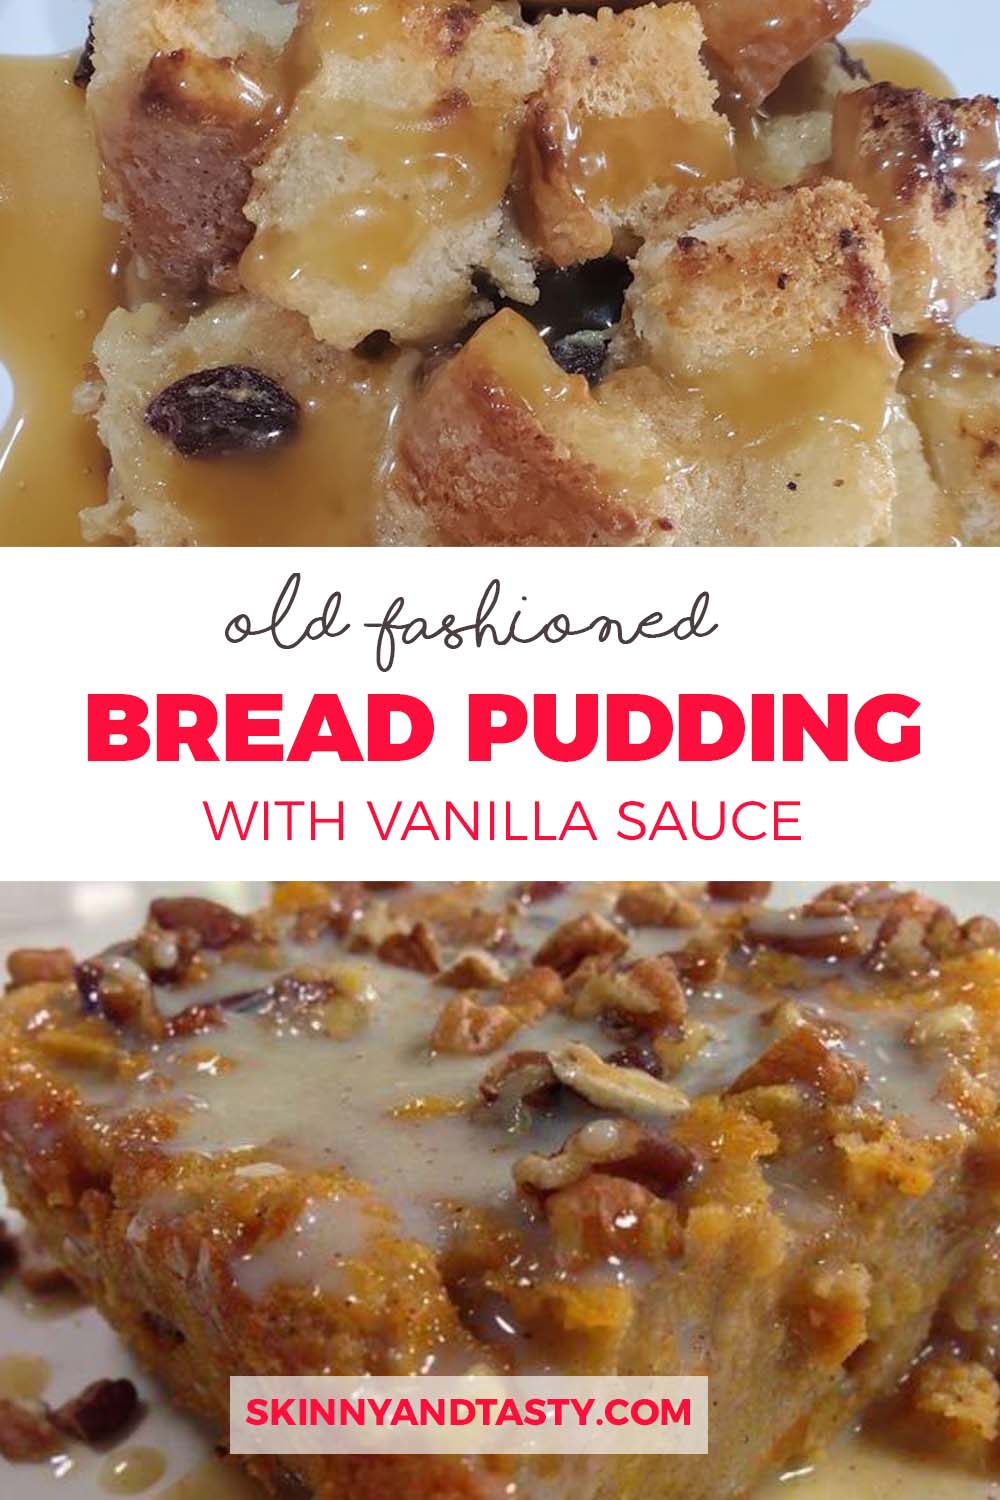 Grandma’s Old-Fashioned Bread Pudding with Vanilla Sauce!